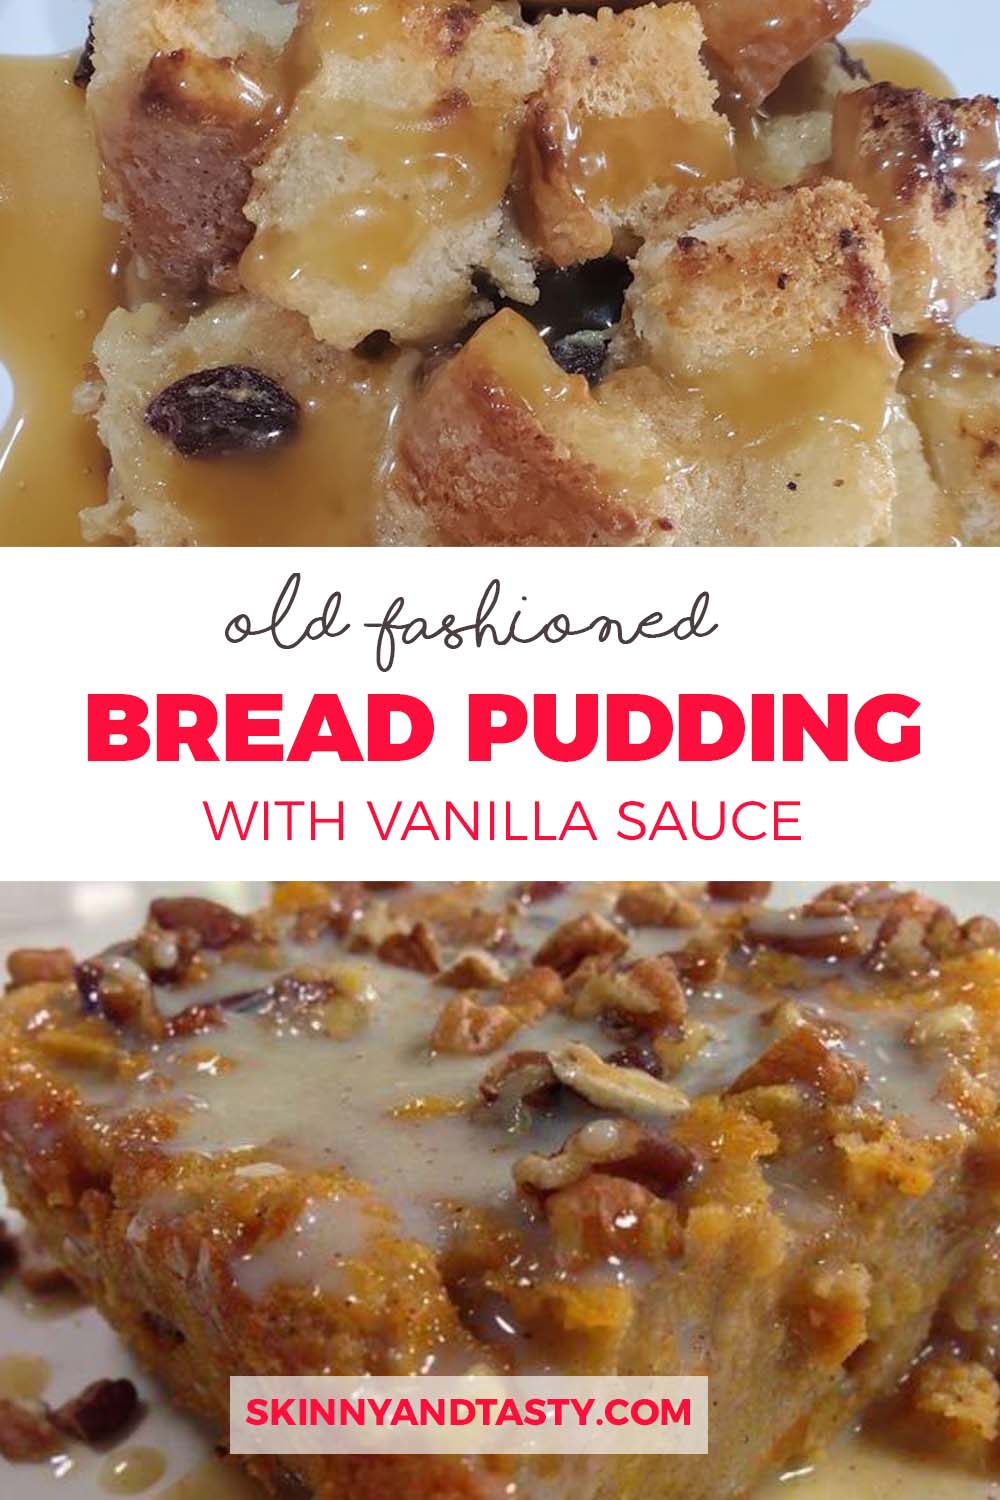 Grandma’s Old-Fashioned Bread Pudding with Vanilla Sauce!